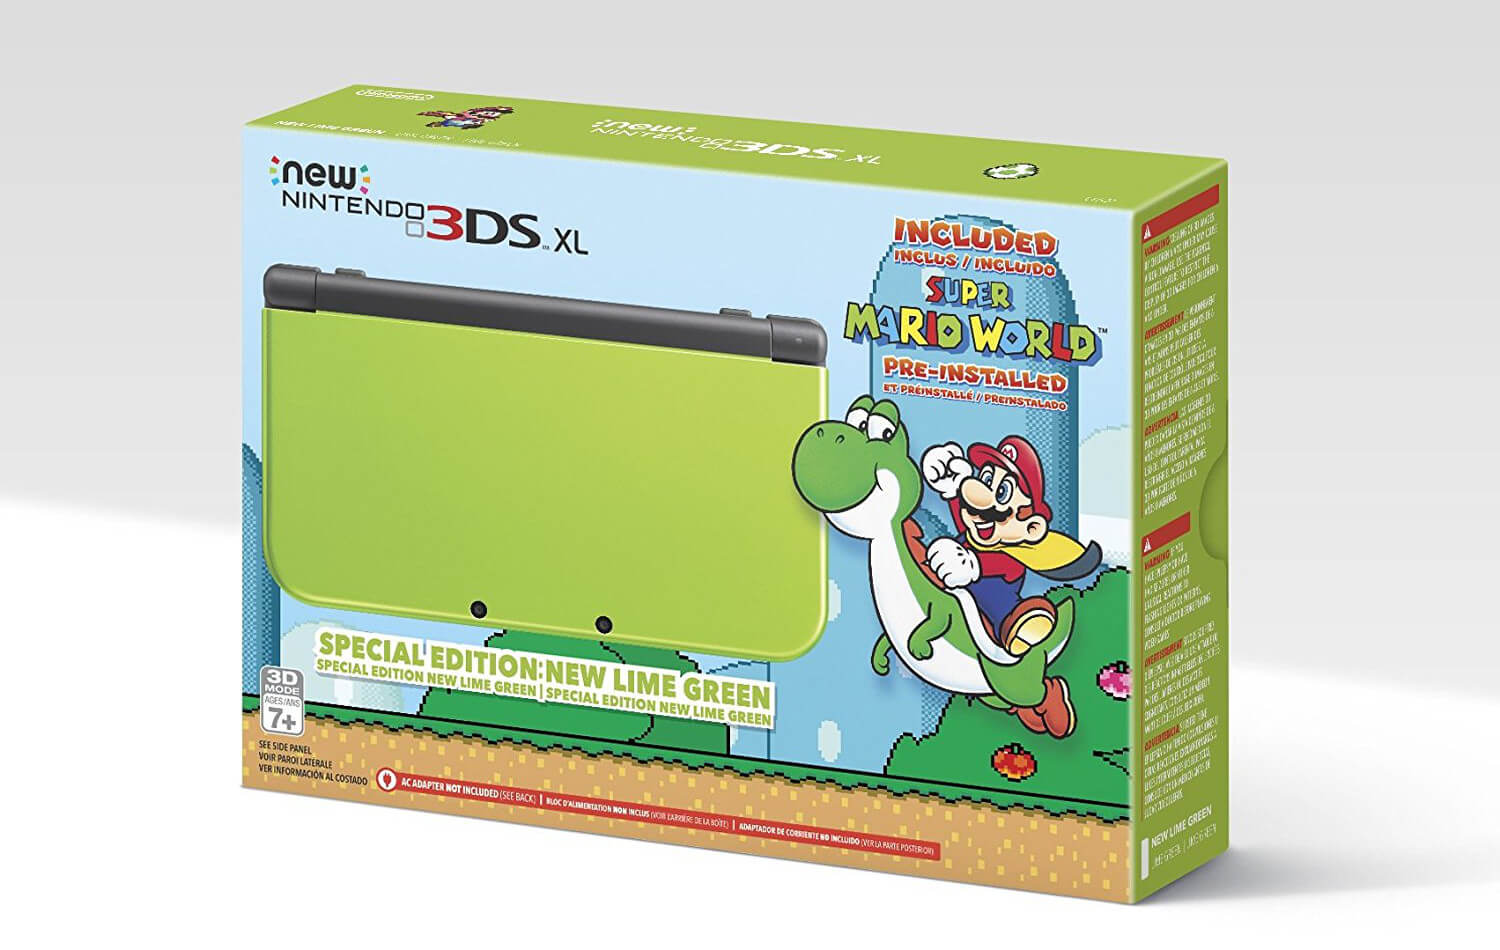 Nintendo New 3DS XL com Super Mario World